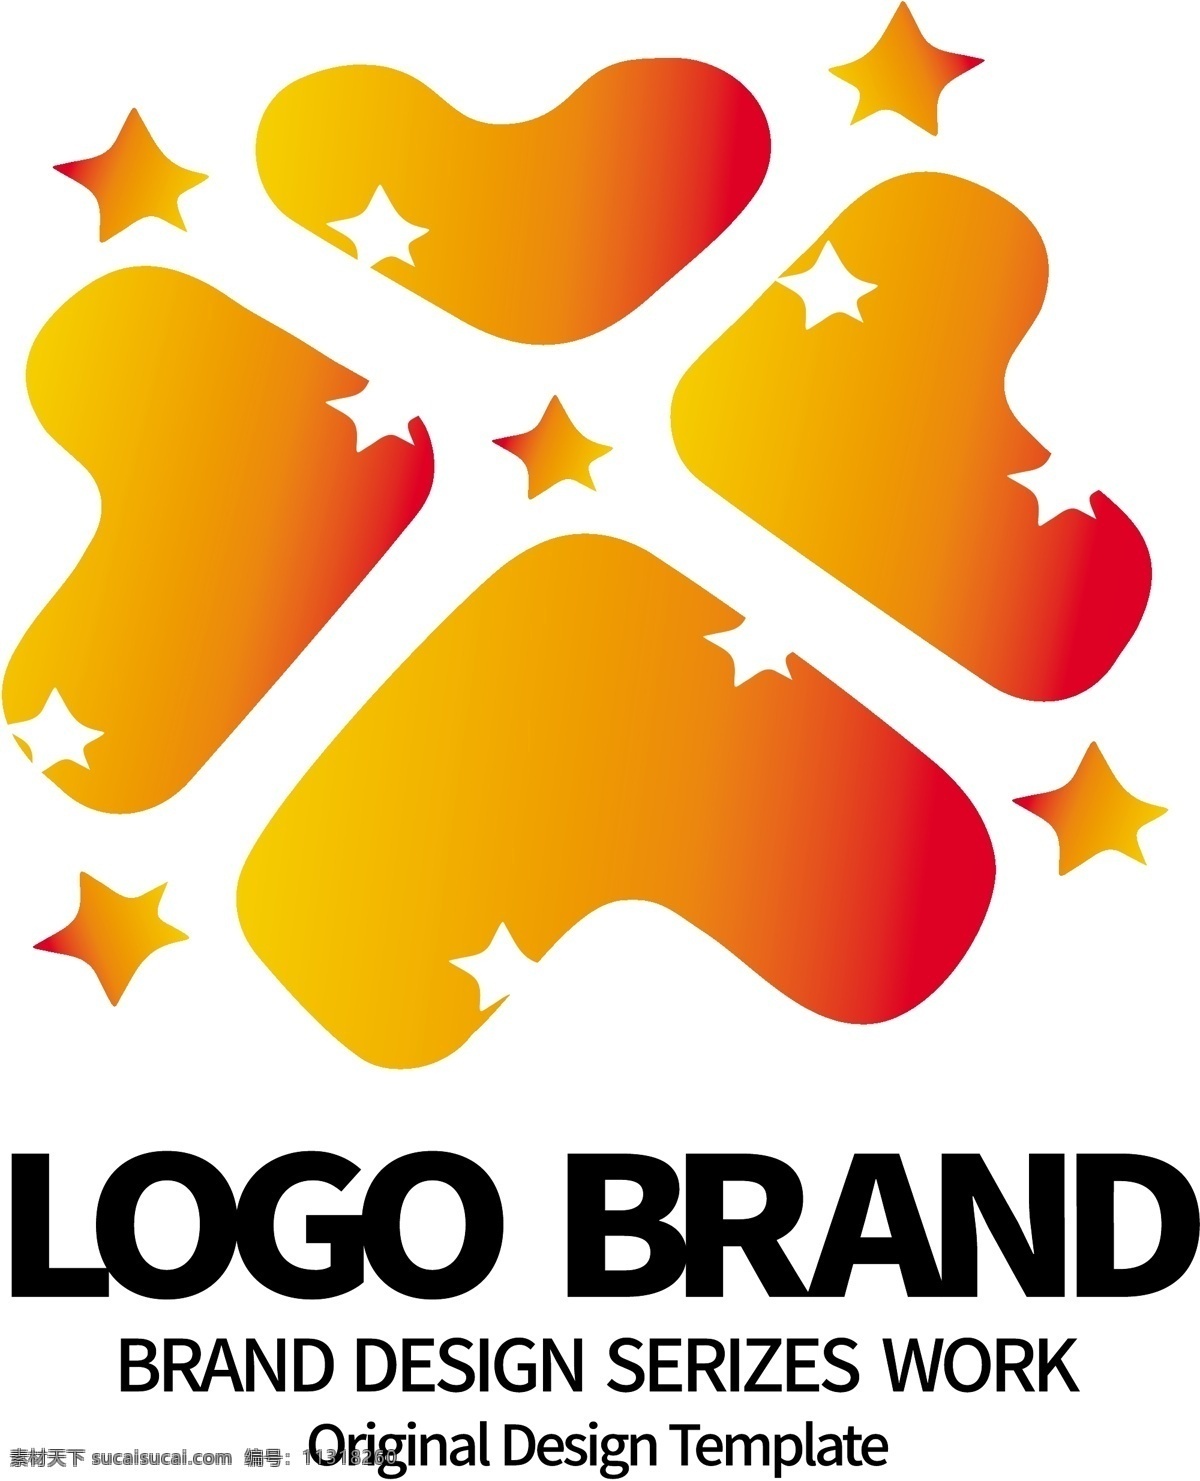 创意 红 黄 爱心 t 字母 公司 logo 标志设计 蛋糕图标 v 字母x标志 爱心logo 星形logo 公司标志设计 企业 会徽标志设计 企业标志设计